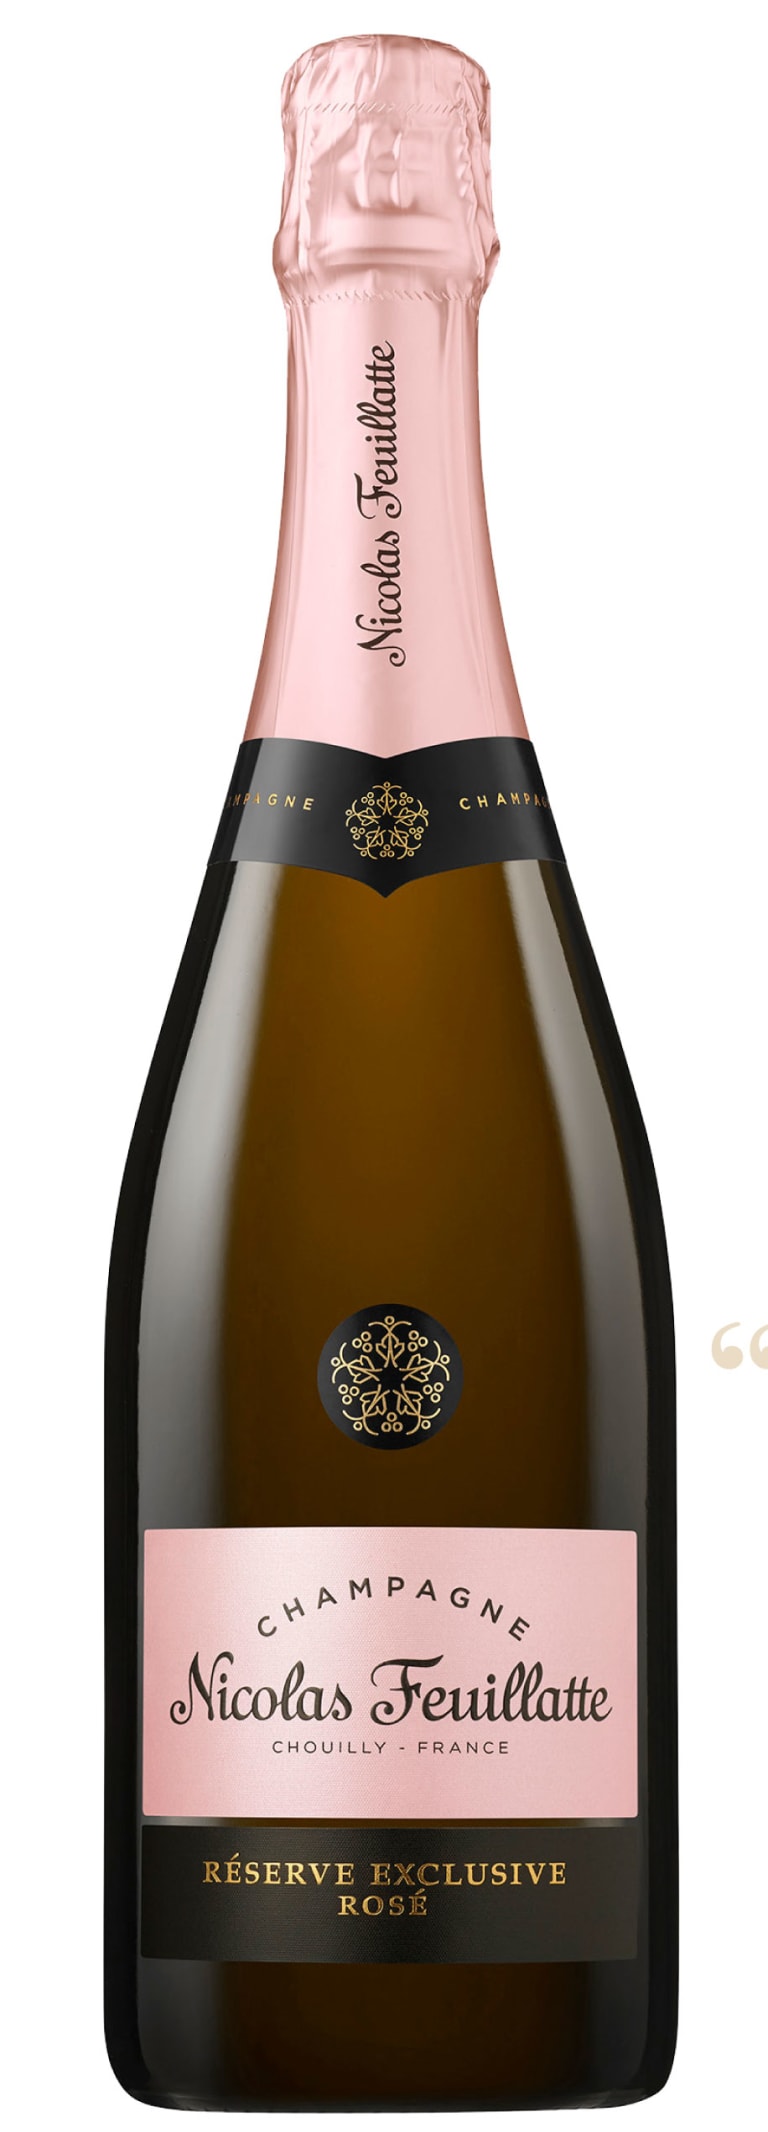 Champagne MOET & CHANDON Réserve Impériale Brut - Nicolas